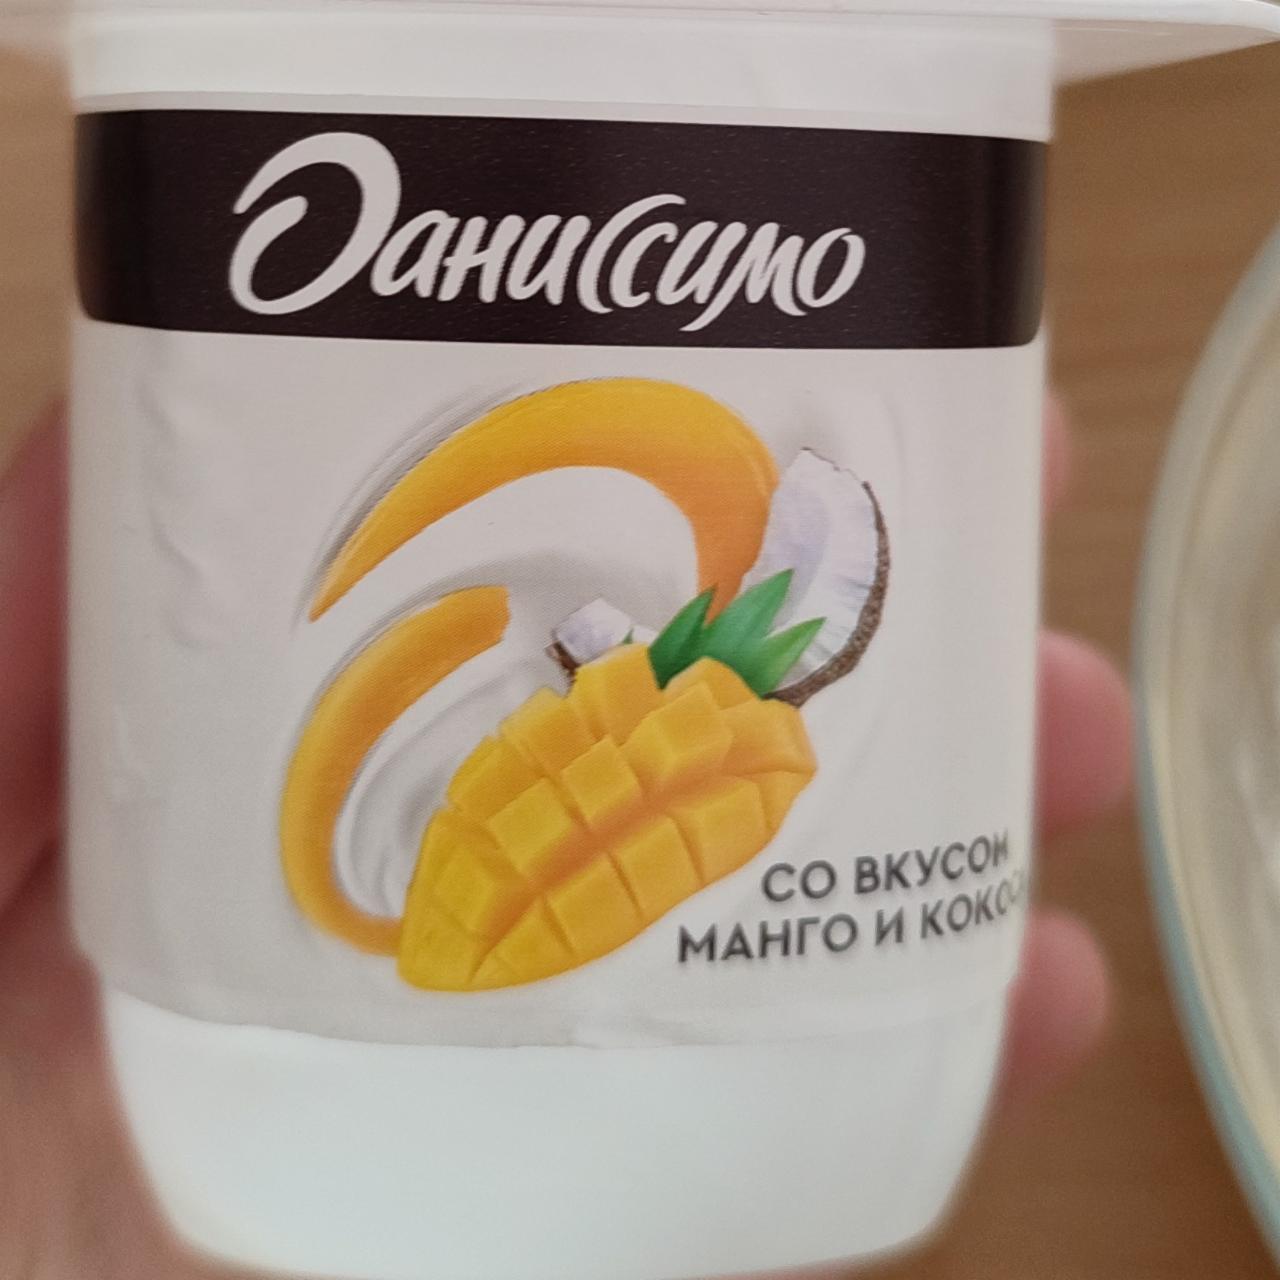 Фото - йогурт со вкусом манго и кокоса Даниссимо